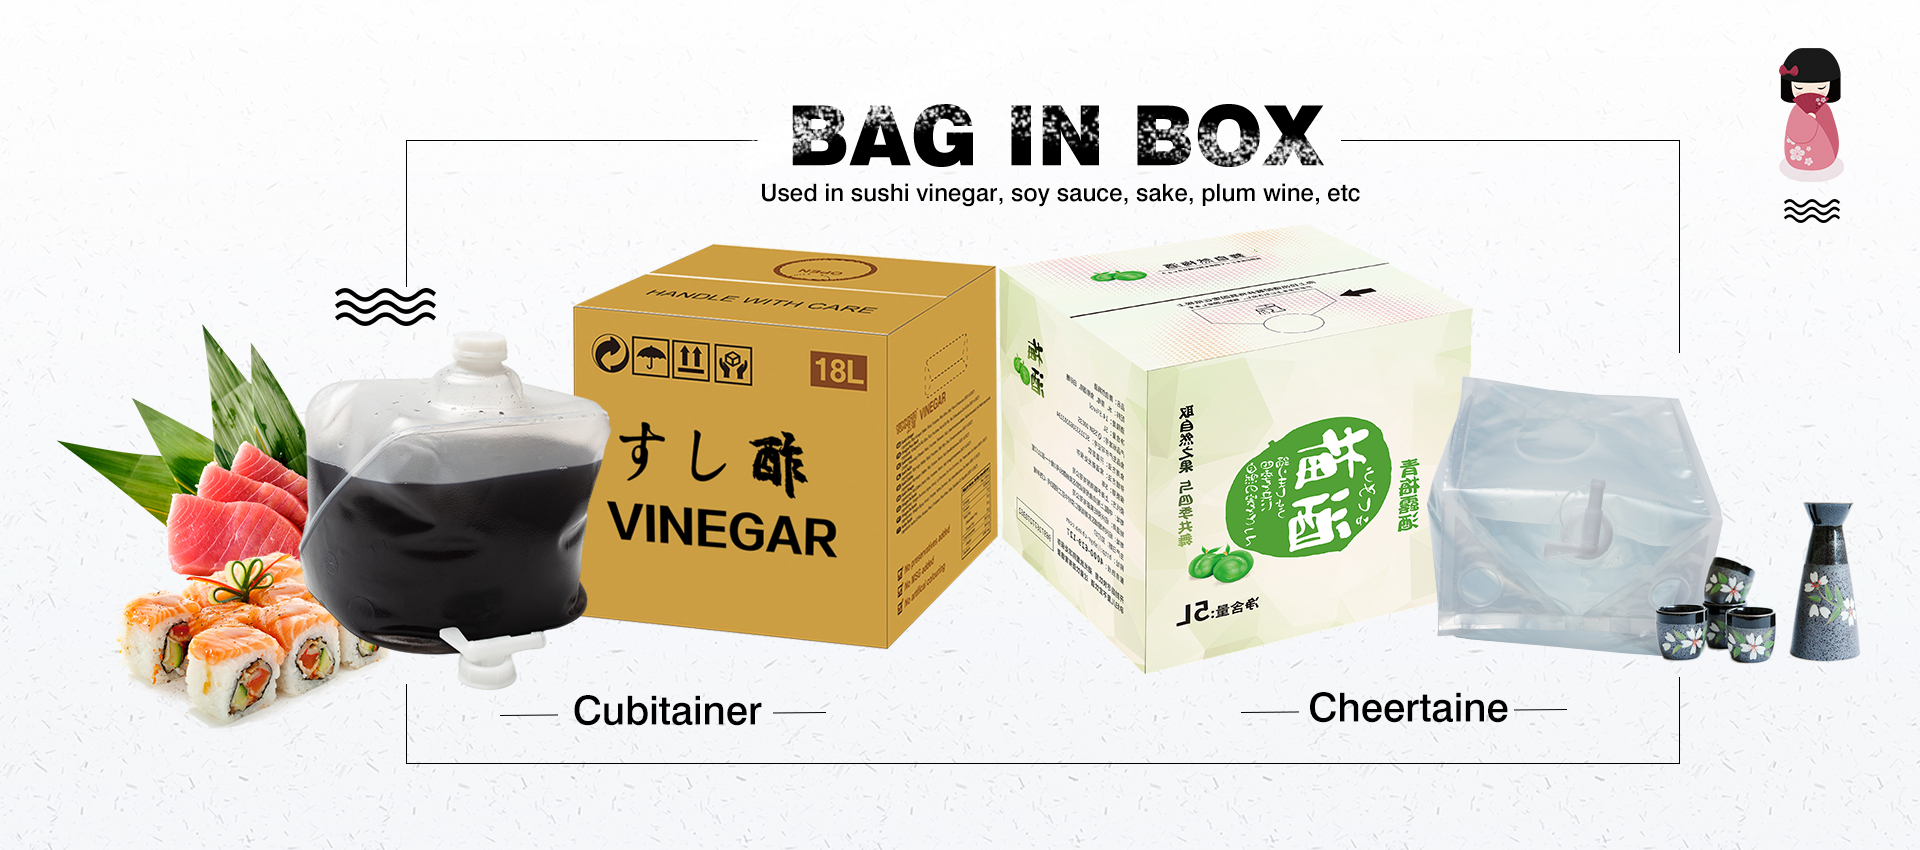 vinegar soy sauce bag in box